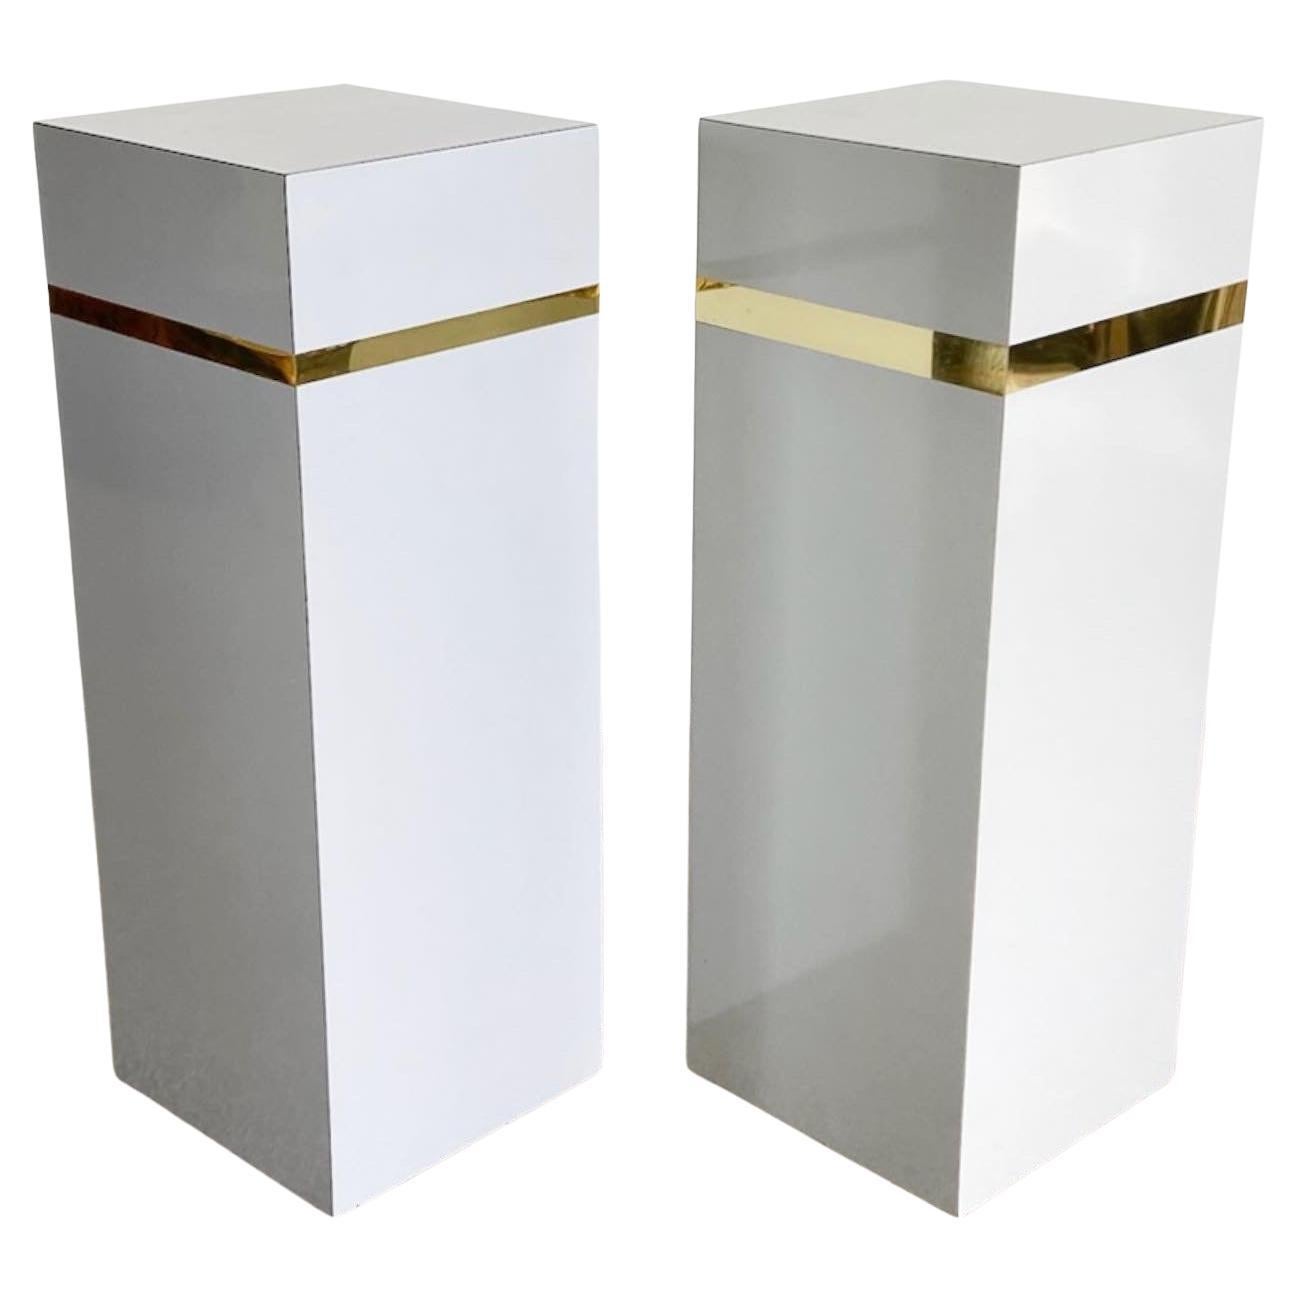 Postmoderne rechteckige Sockel aus grau lackiertem Laminat und Gold – ein Paar